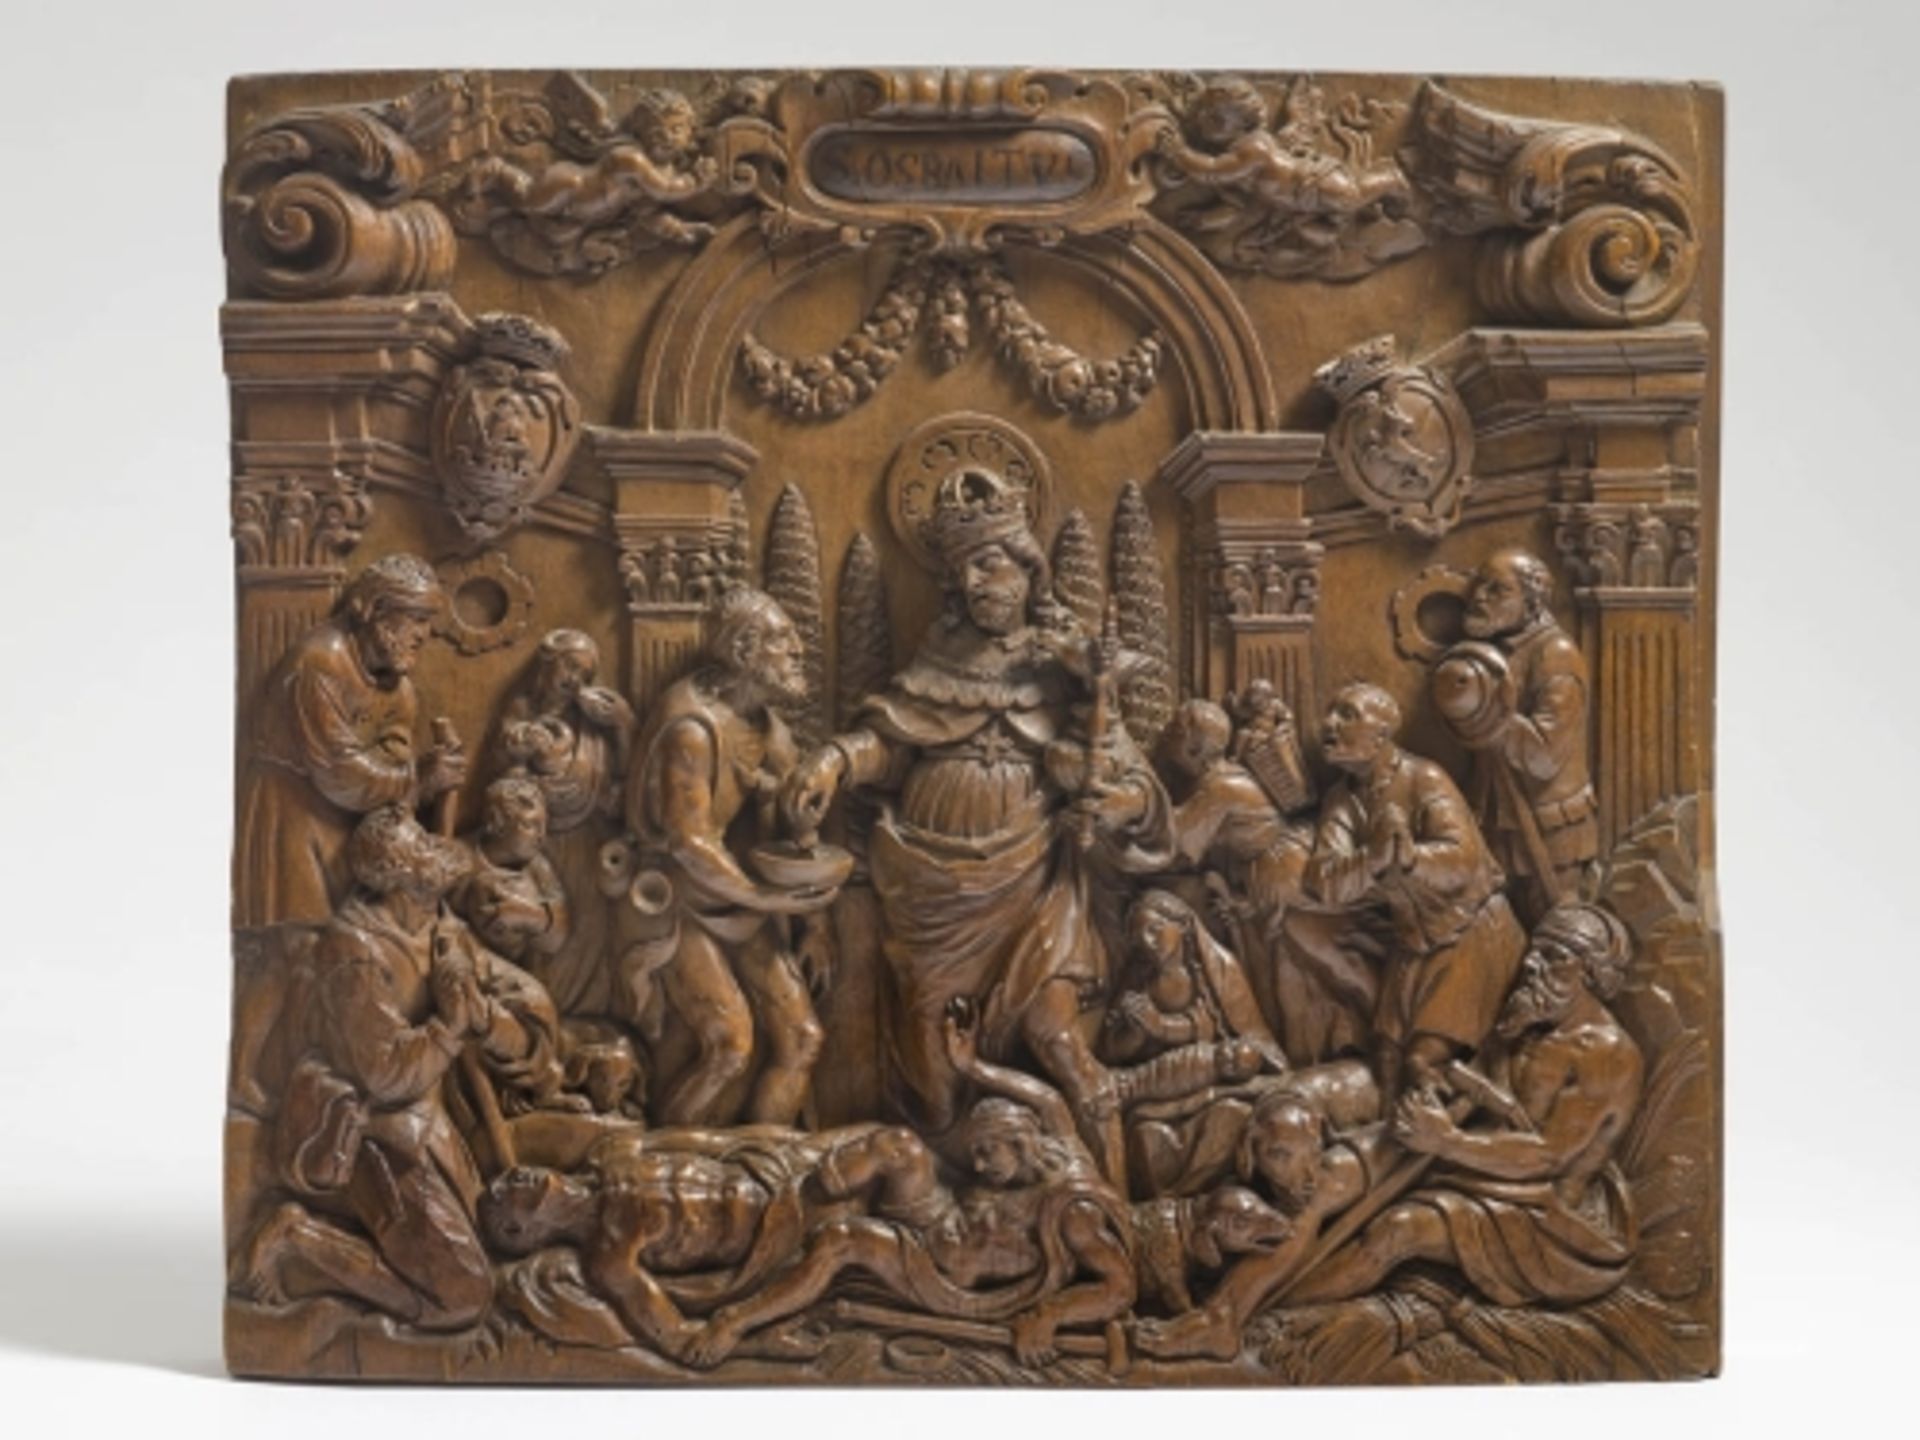 St. OswaldÖsterreich, um 1700 Der Heilige vor dem Portal einer Palastarchitektur mit seinem Attribut